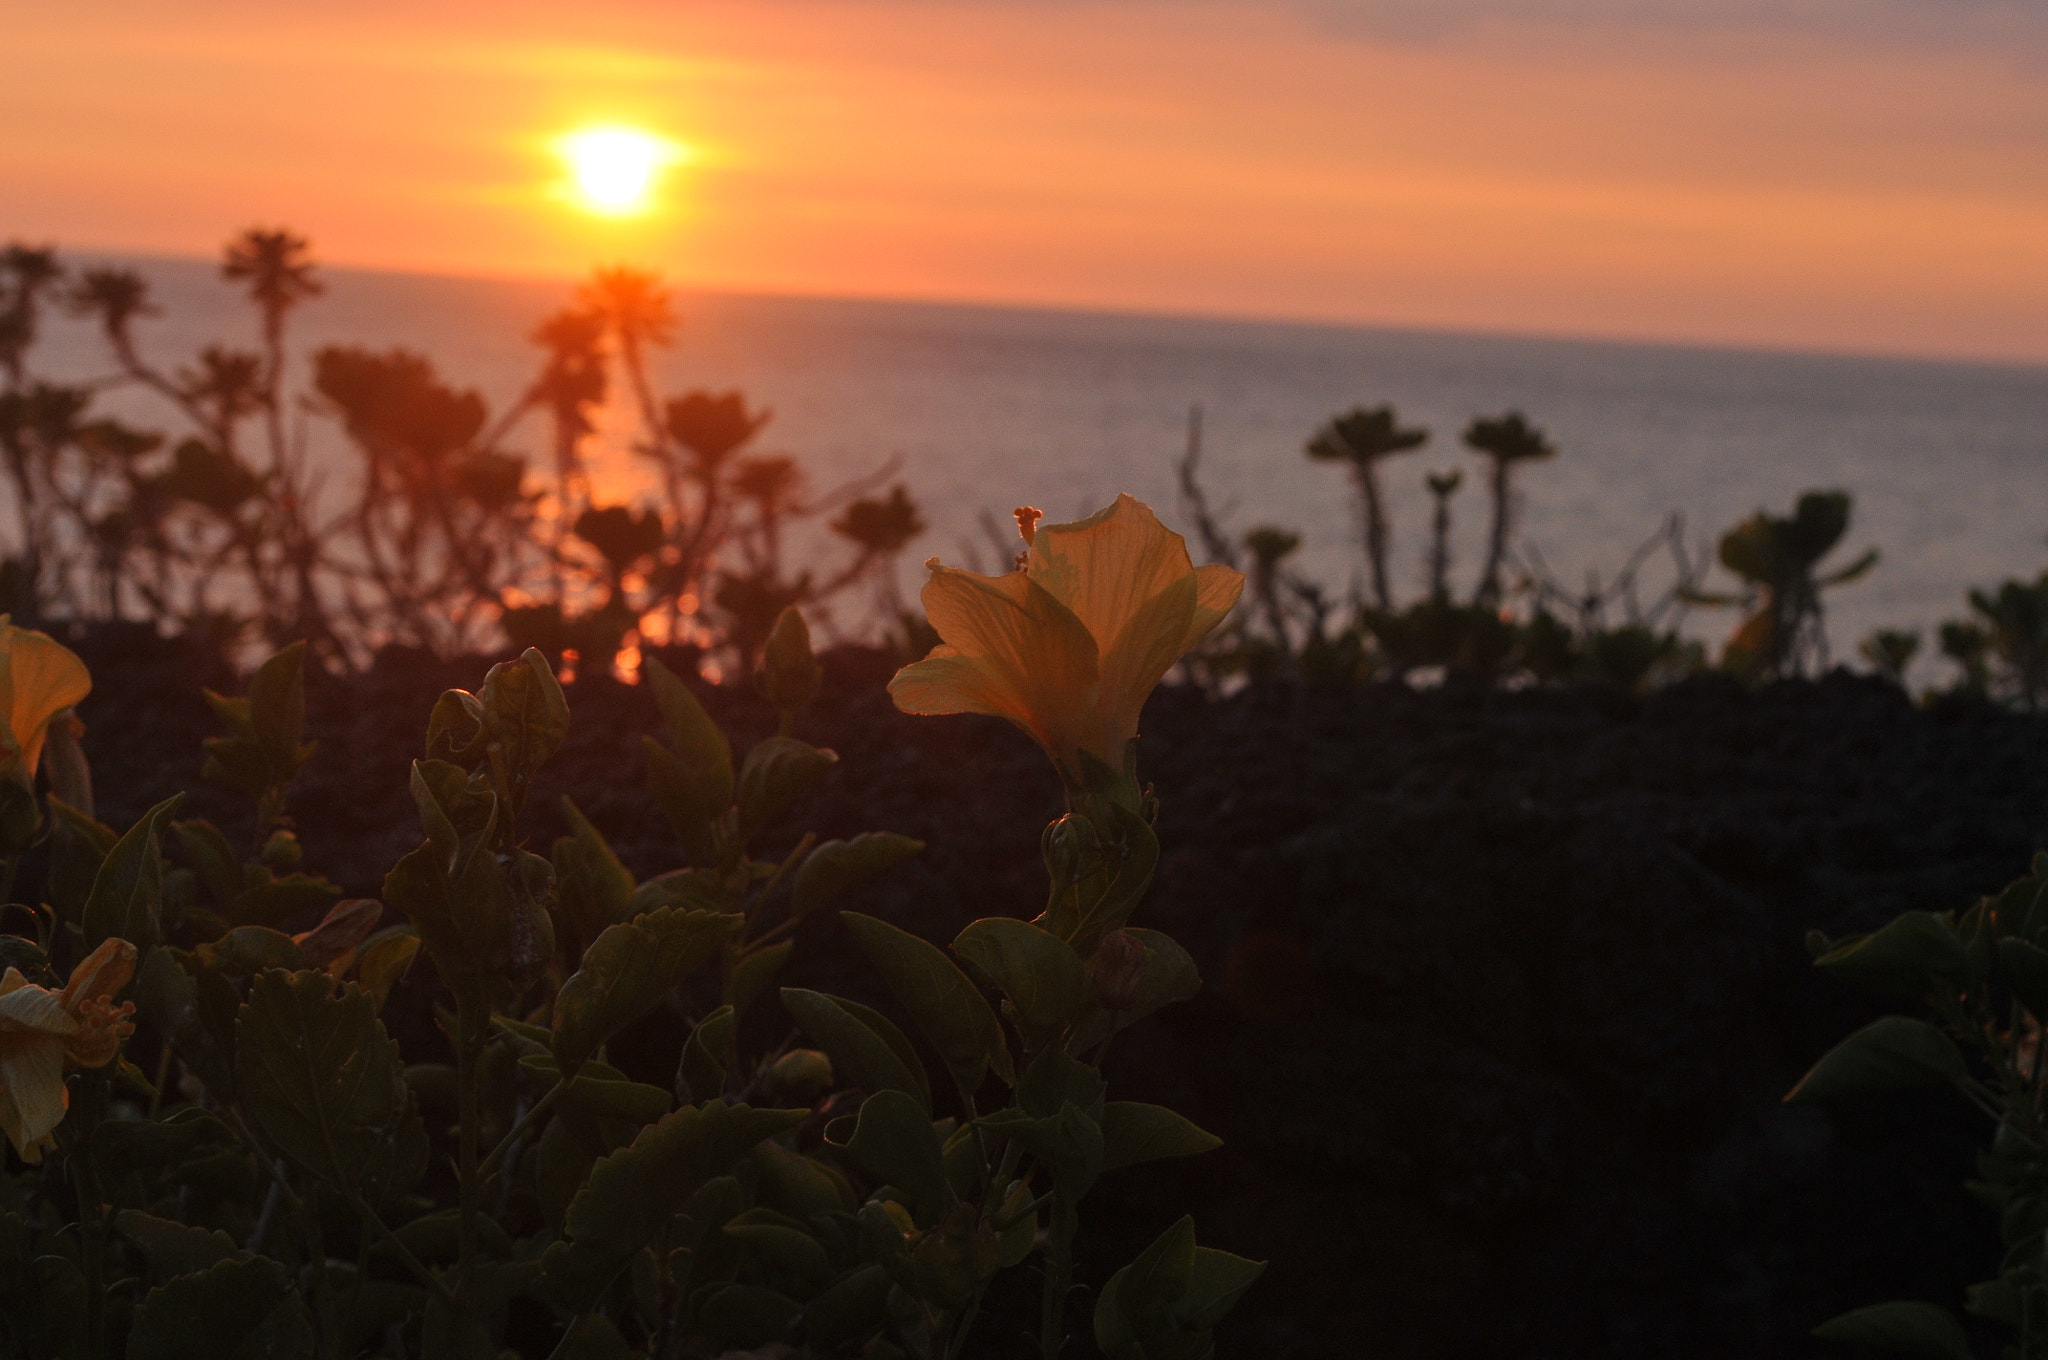 Nikon D300S + Nikon AF-S DX Nikkor 18-55mm F3.5-5.6G VR sample photo. Flower at sunset photography